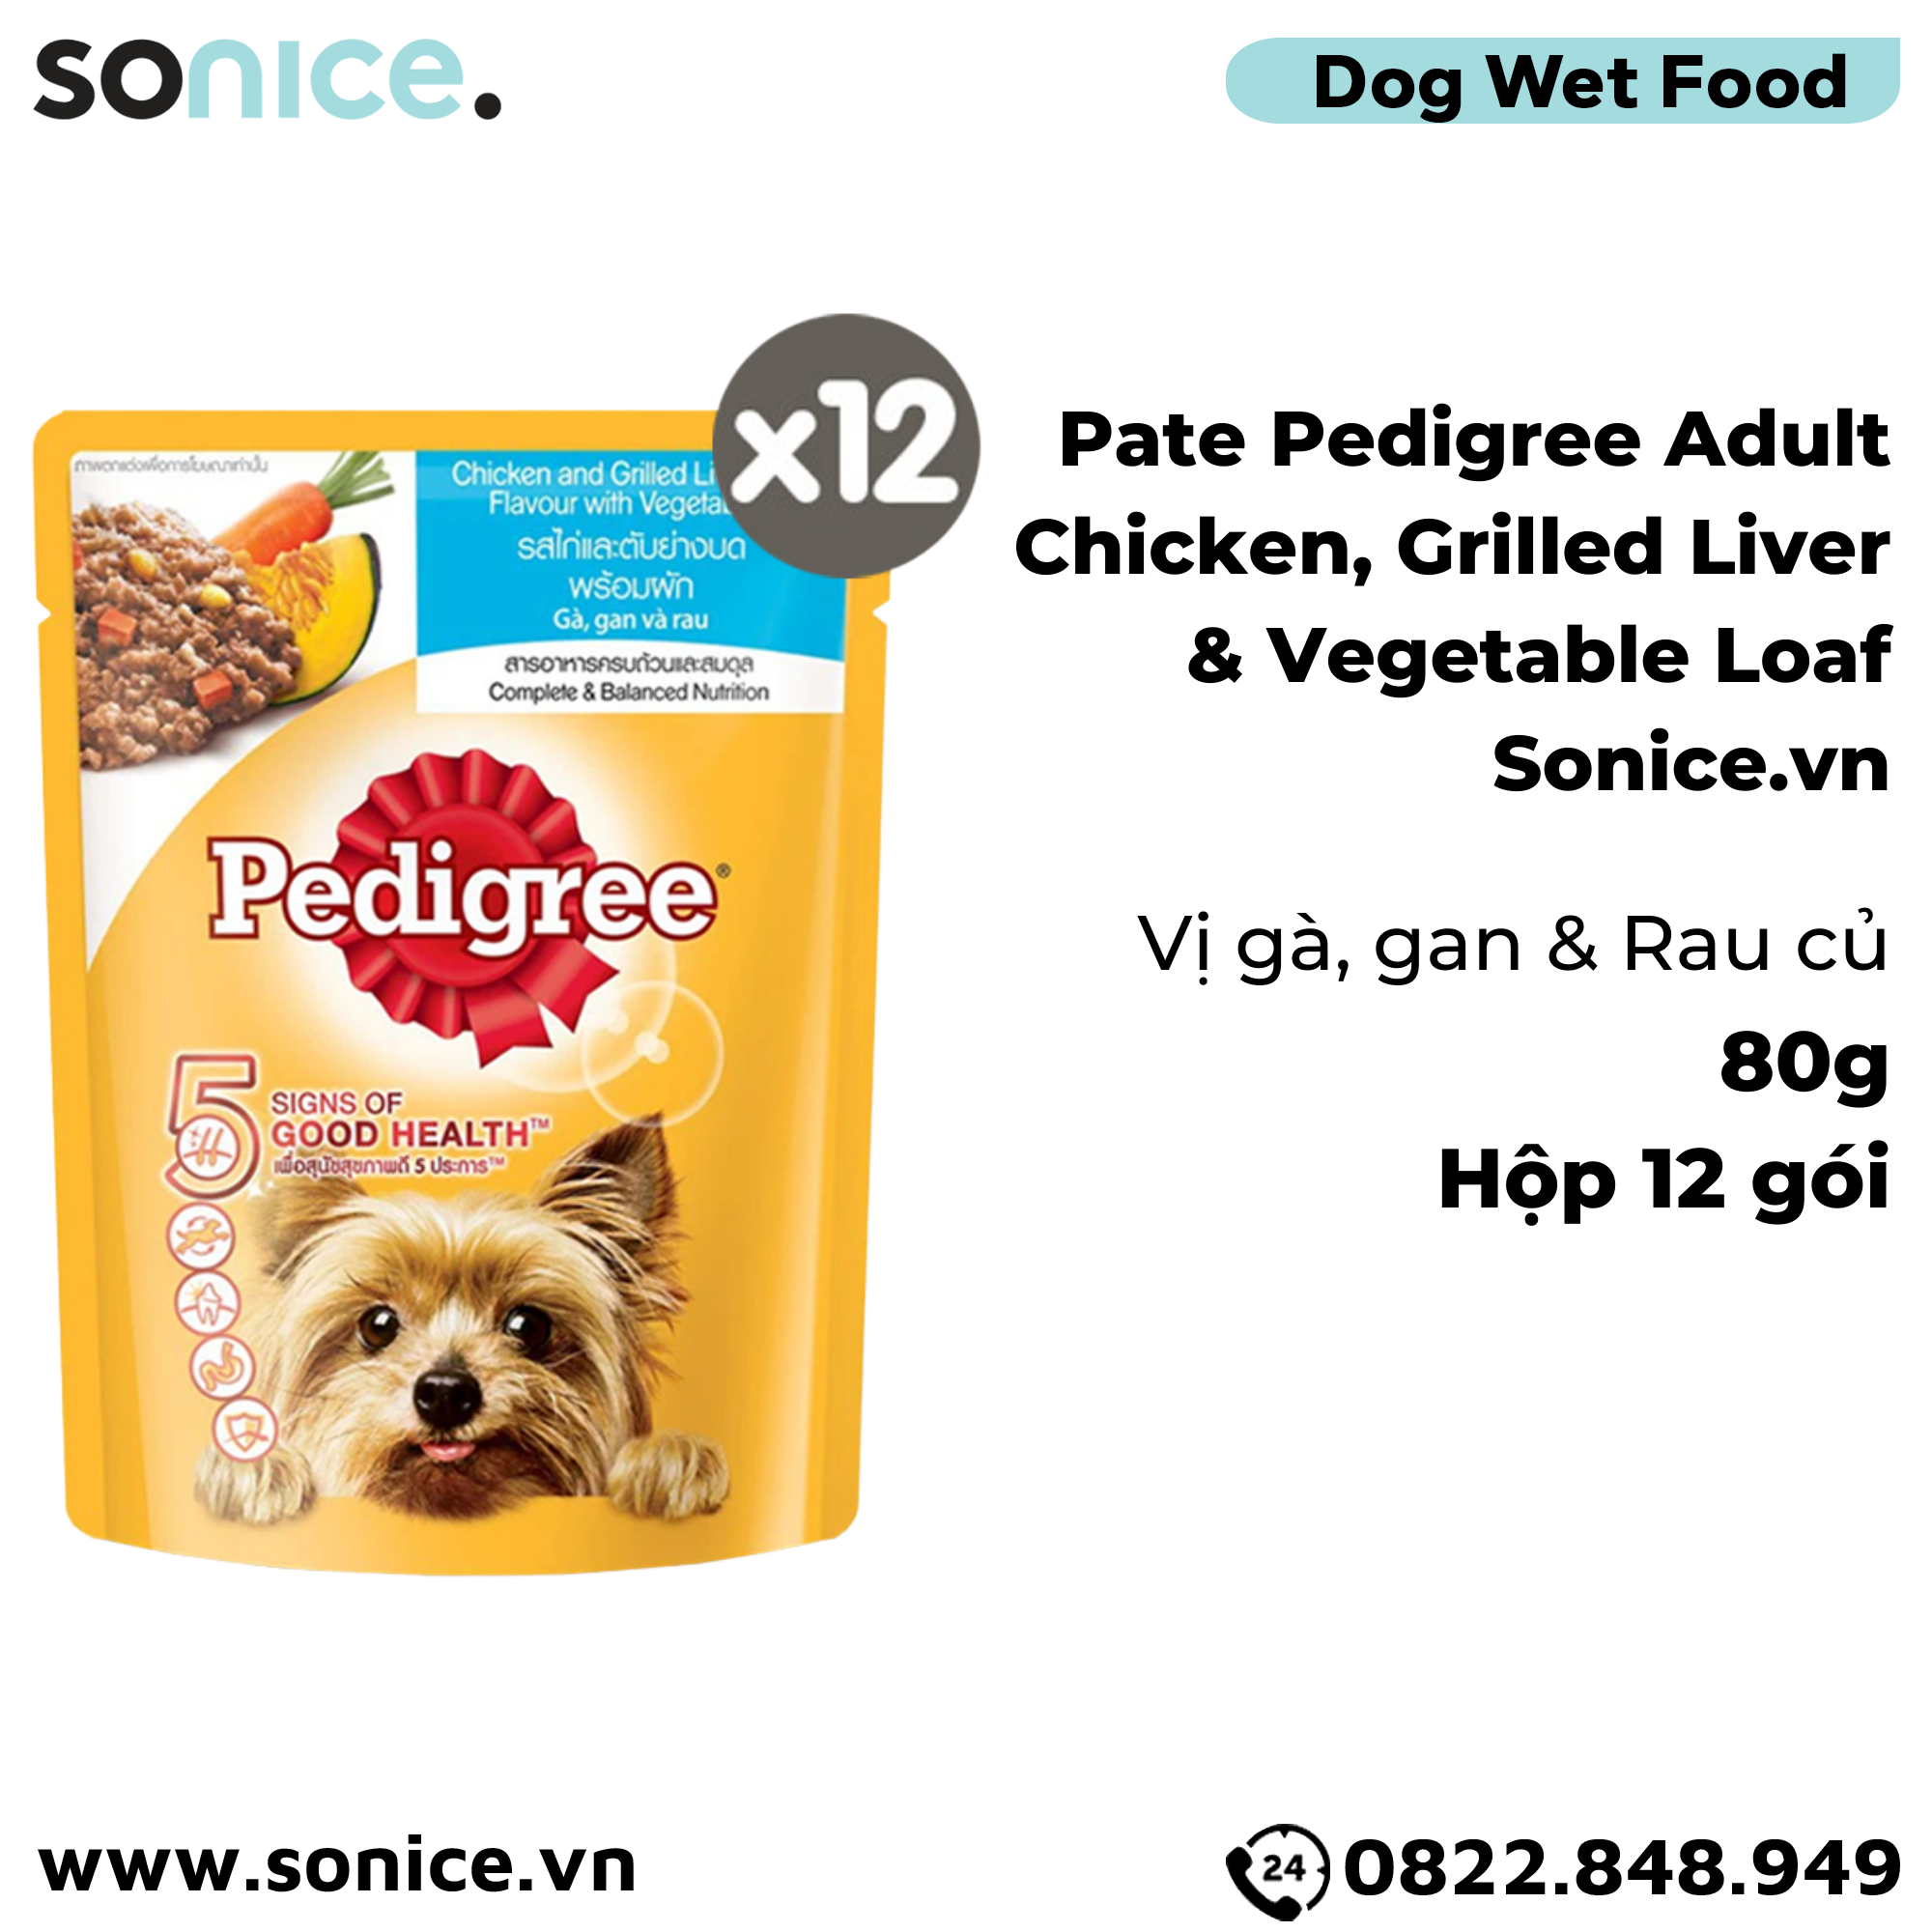  Pate Pedigree Adult Chicken, Grilled Liver & Vegetable Loaf 80g - Hộp 12 gói - Cho chó trưởng thành, vị Gà, Gan và Rau củ SONICE. 